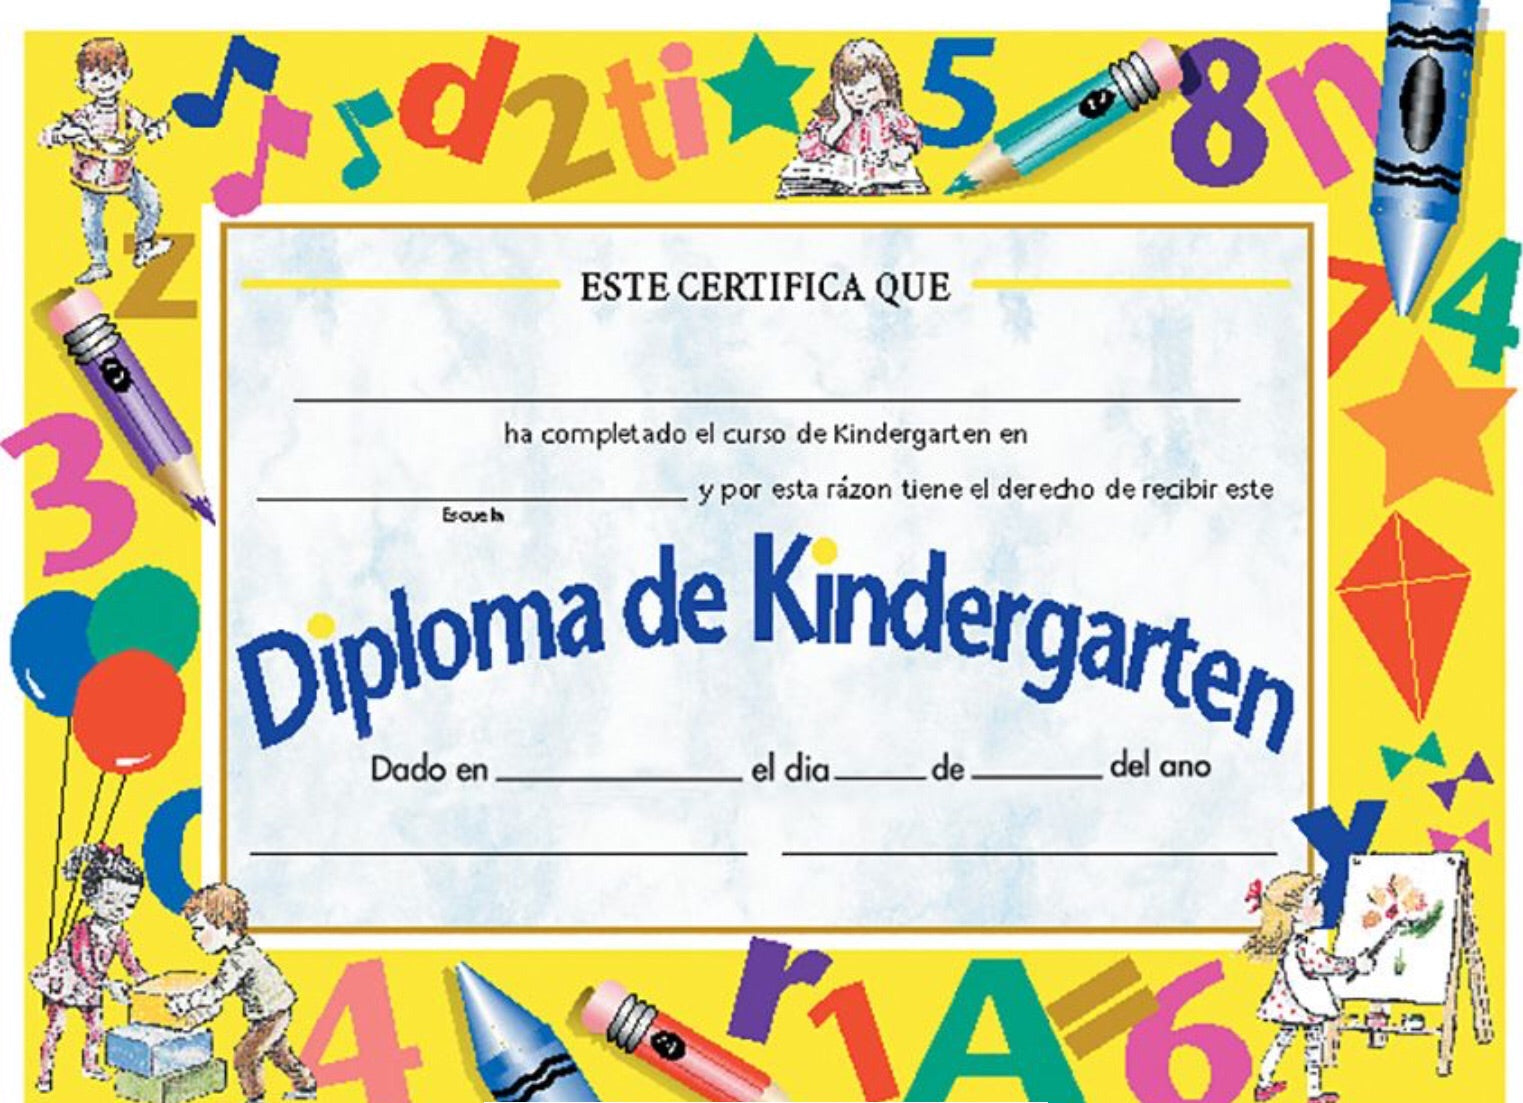 Awards: Diploma de Kindergarten (SPANISH), School Tools